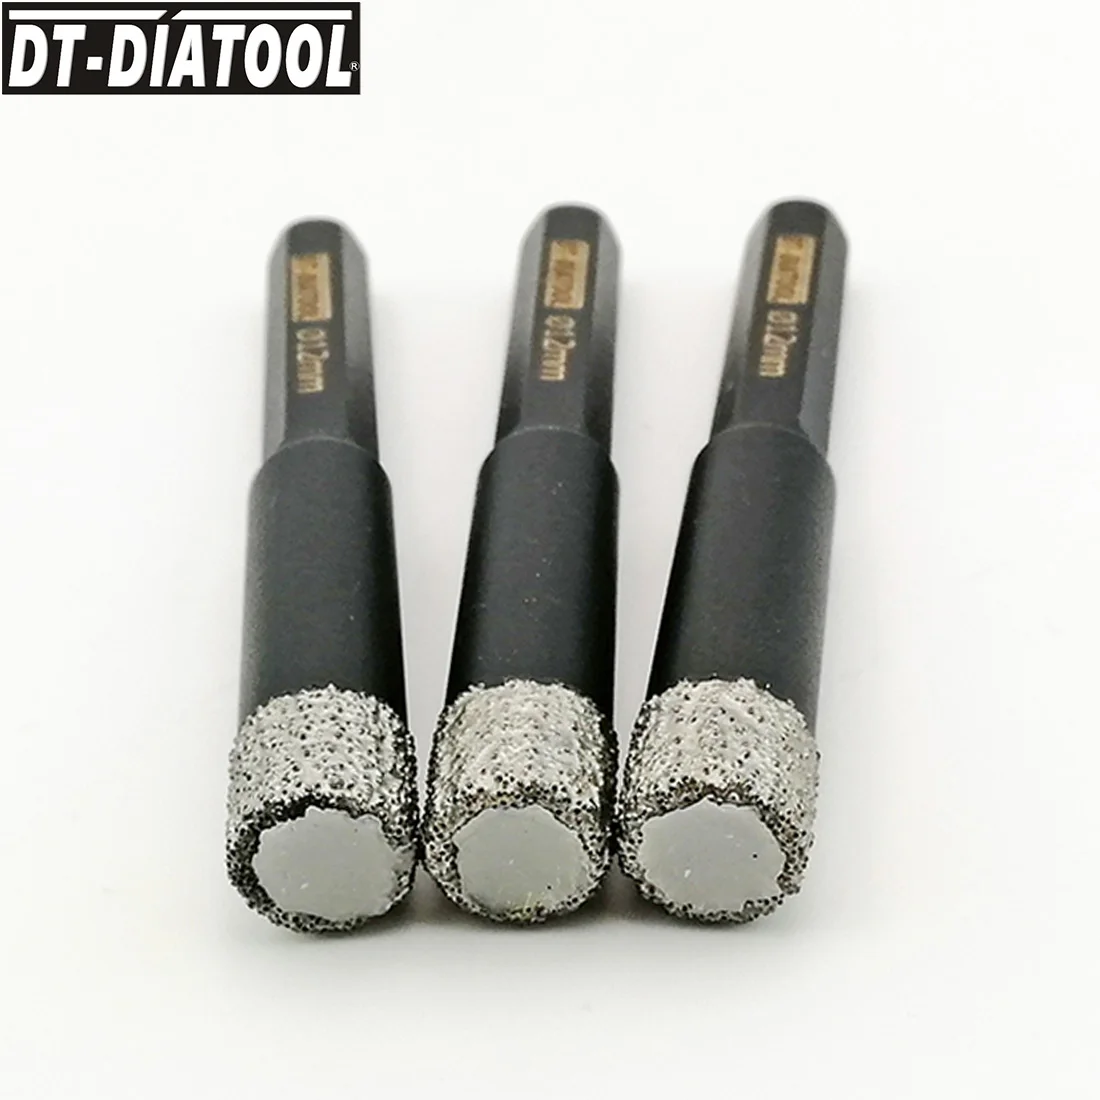 DT-DIATOOL 3tk Dia12mm Kuiv Tolmuimeja Brazed teemantpuurimine, Natuke Kuusnurk Varre Auk Nägi, Graniit, Marmor Keraamiline Plaat Drill Core Bit Pilt 1